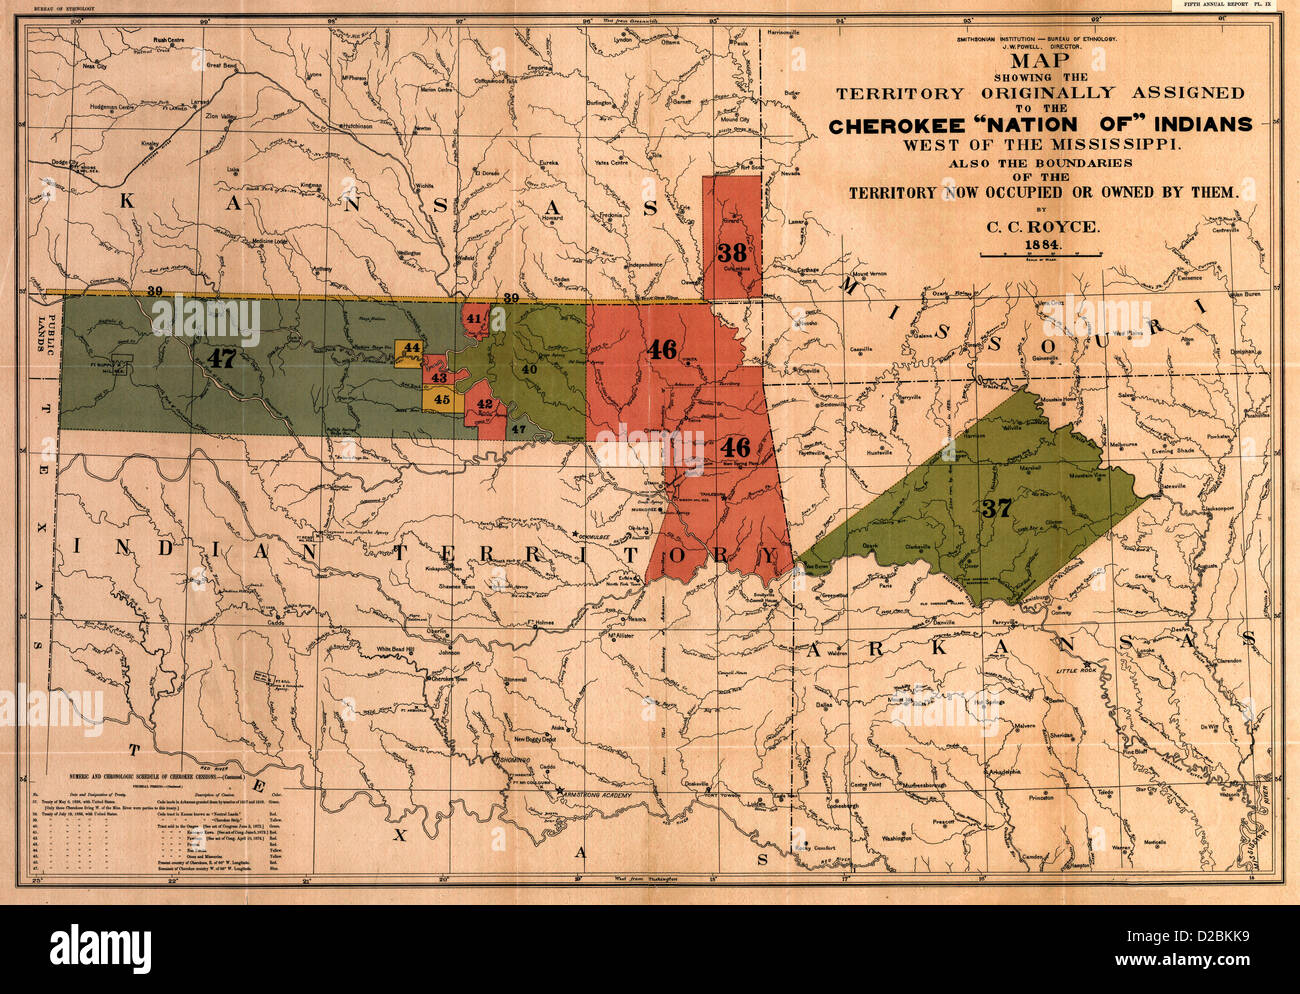 Mapa de los límites territoriales de la antigua "Cherokee Nation" de los indios ; Mapa mostrando el territorio asignado originalmente "Cherokee Nation" de los indios, circa 1884 Foto de stock